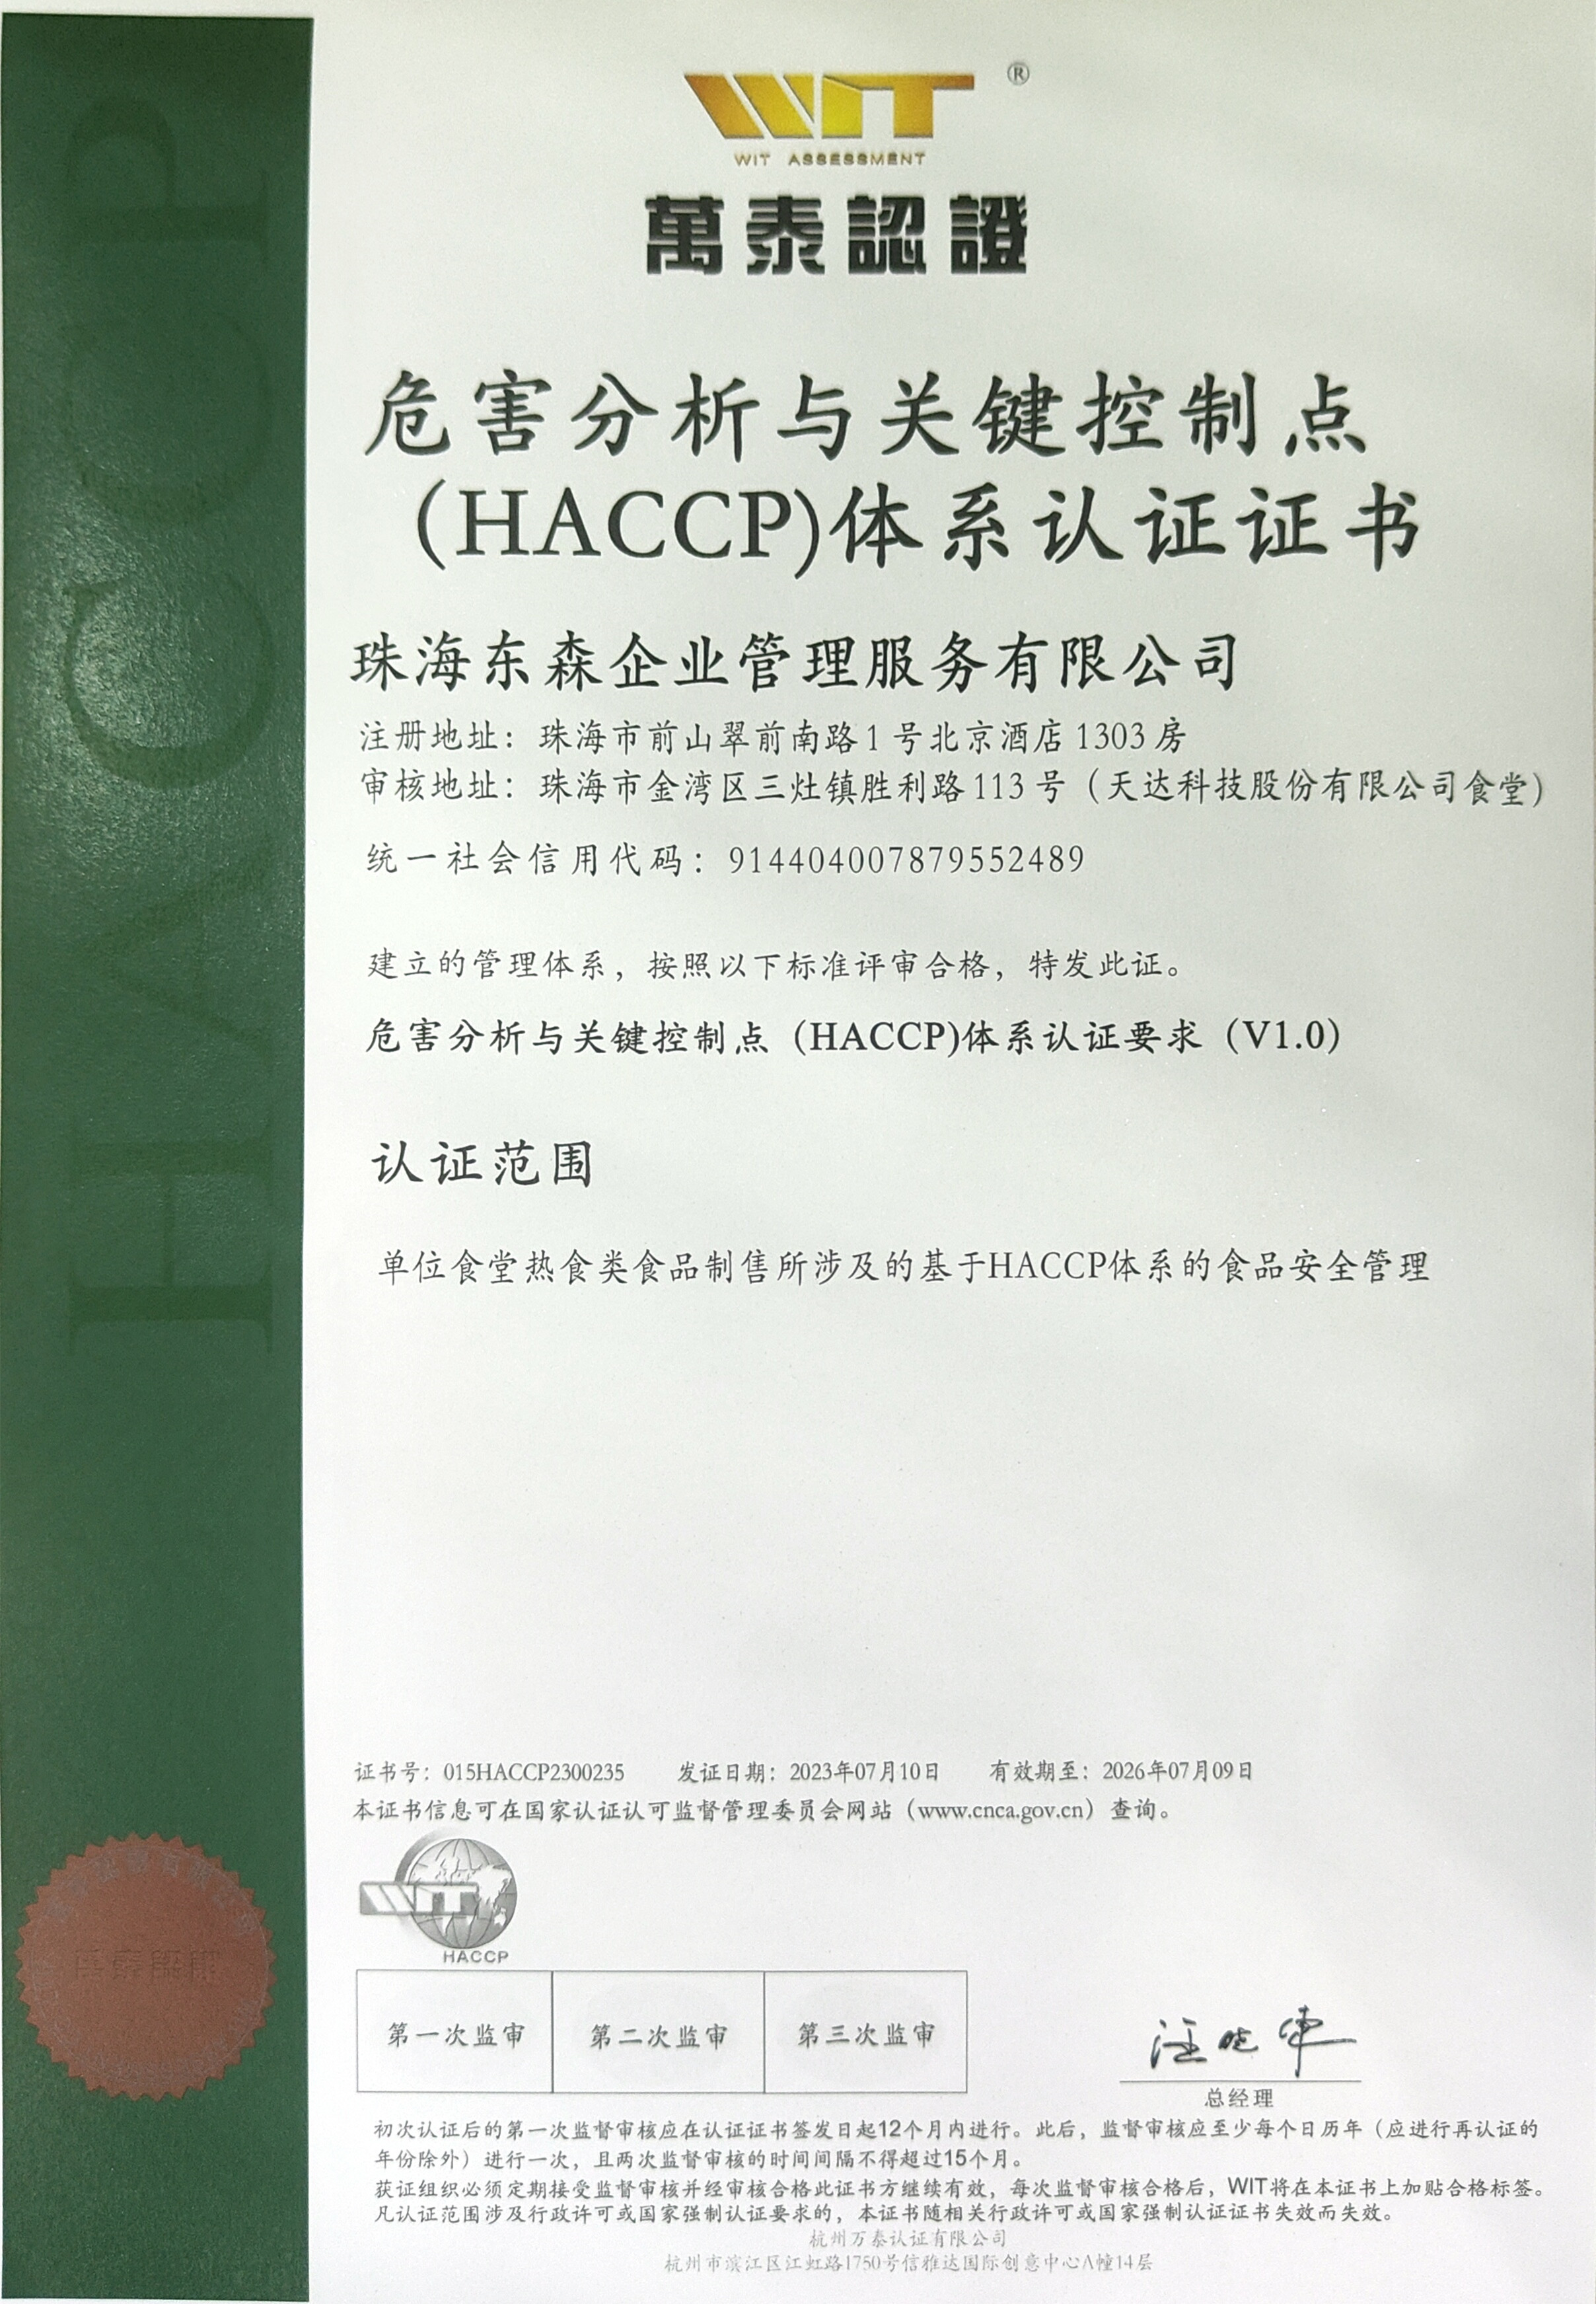 东森公司顺利通过国际HACCP认证